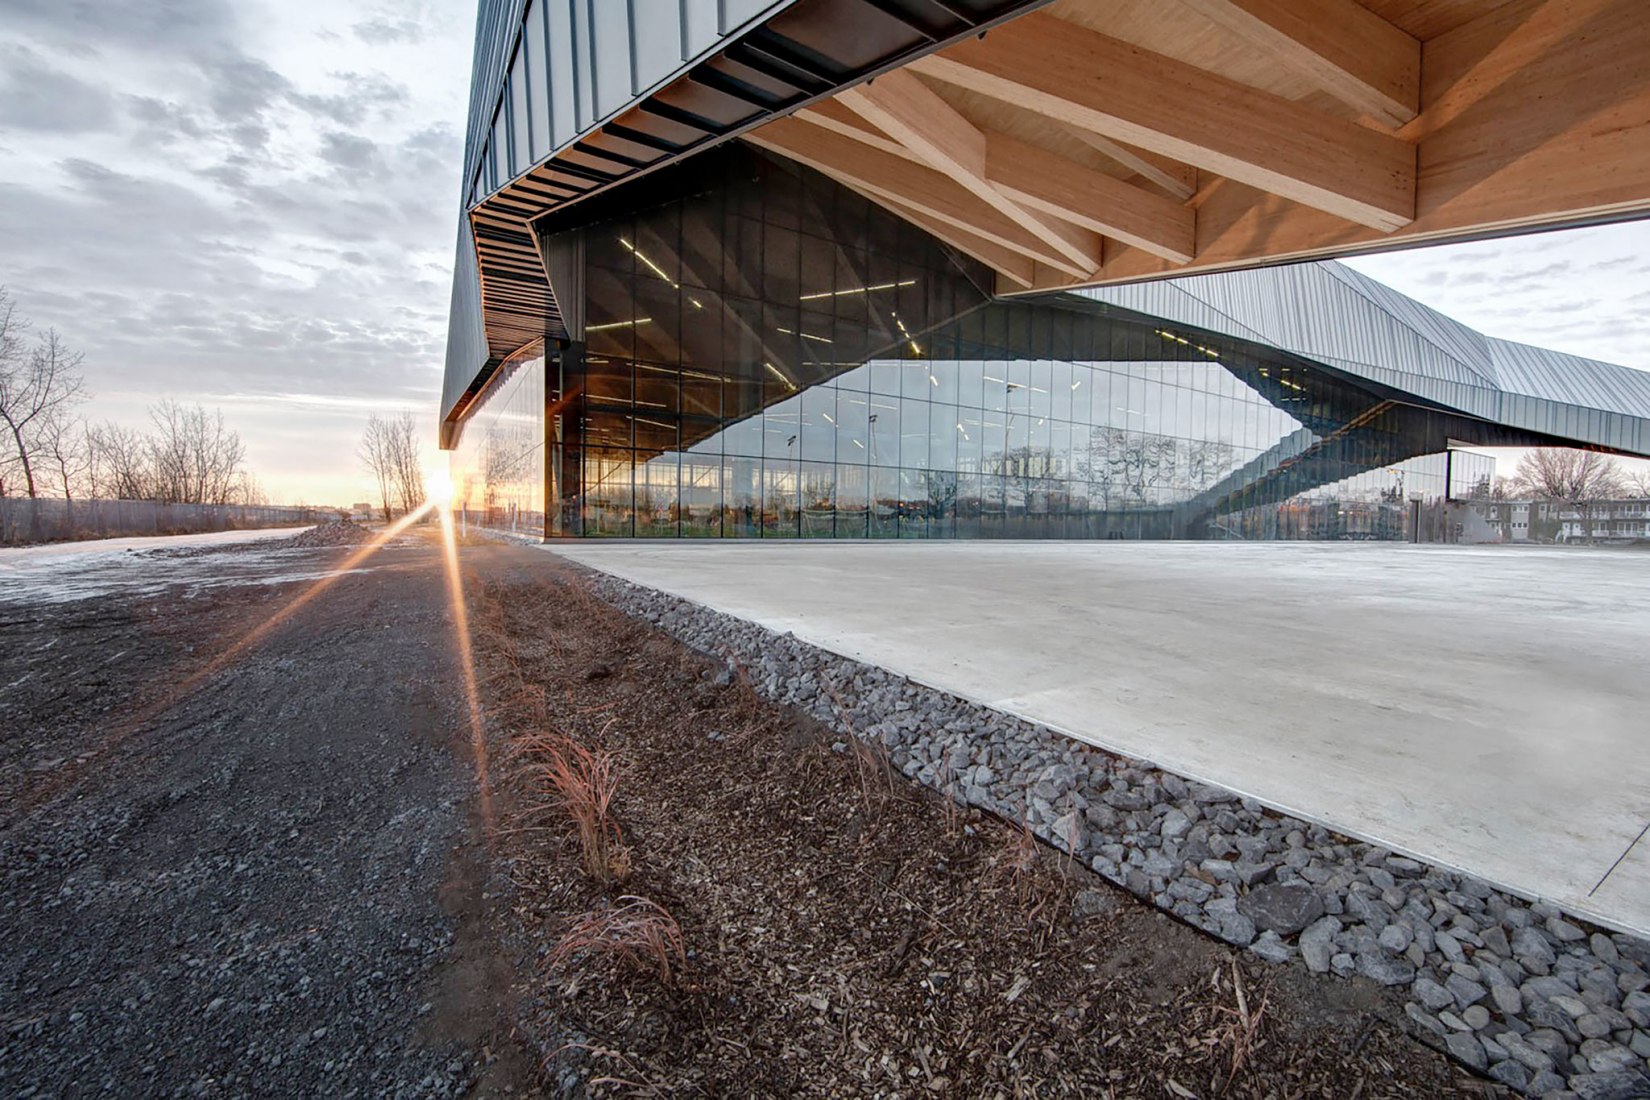 Stade de Soccer de Montréal by Saucier + Perrotte Architectes. Photograph © Olivier Blouin 